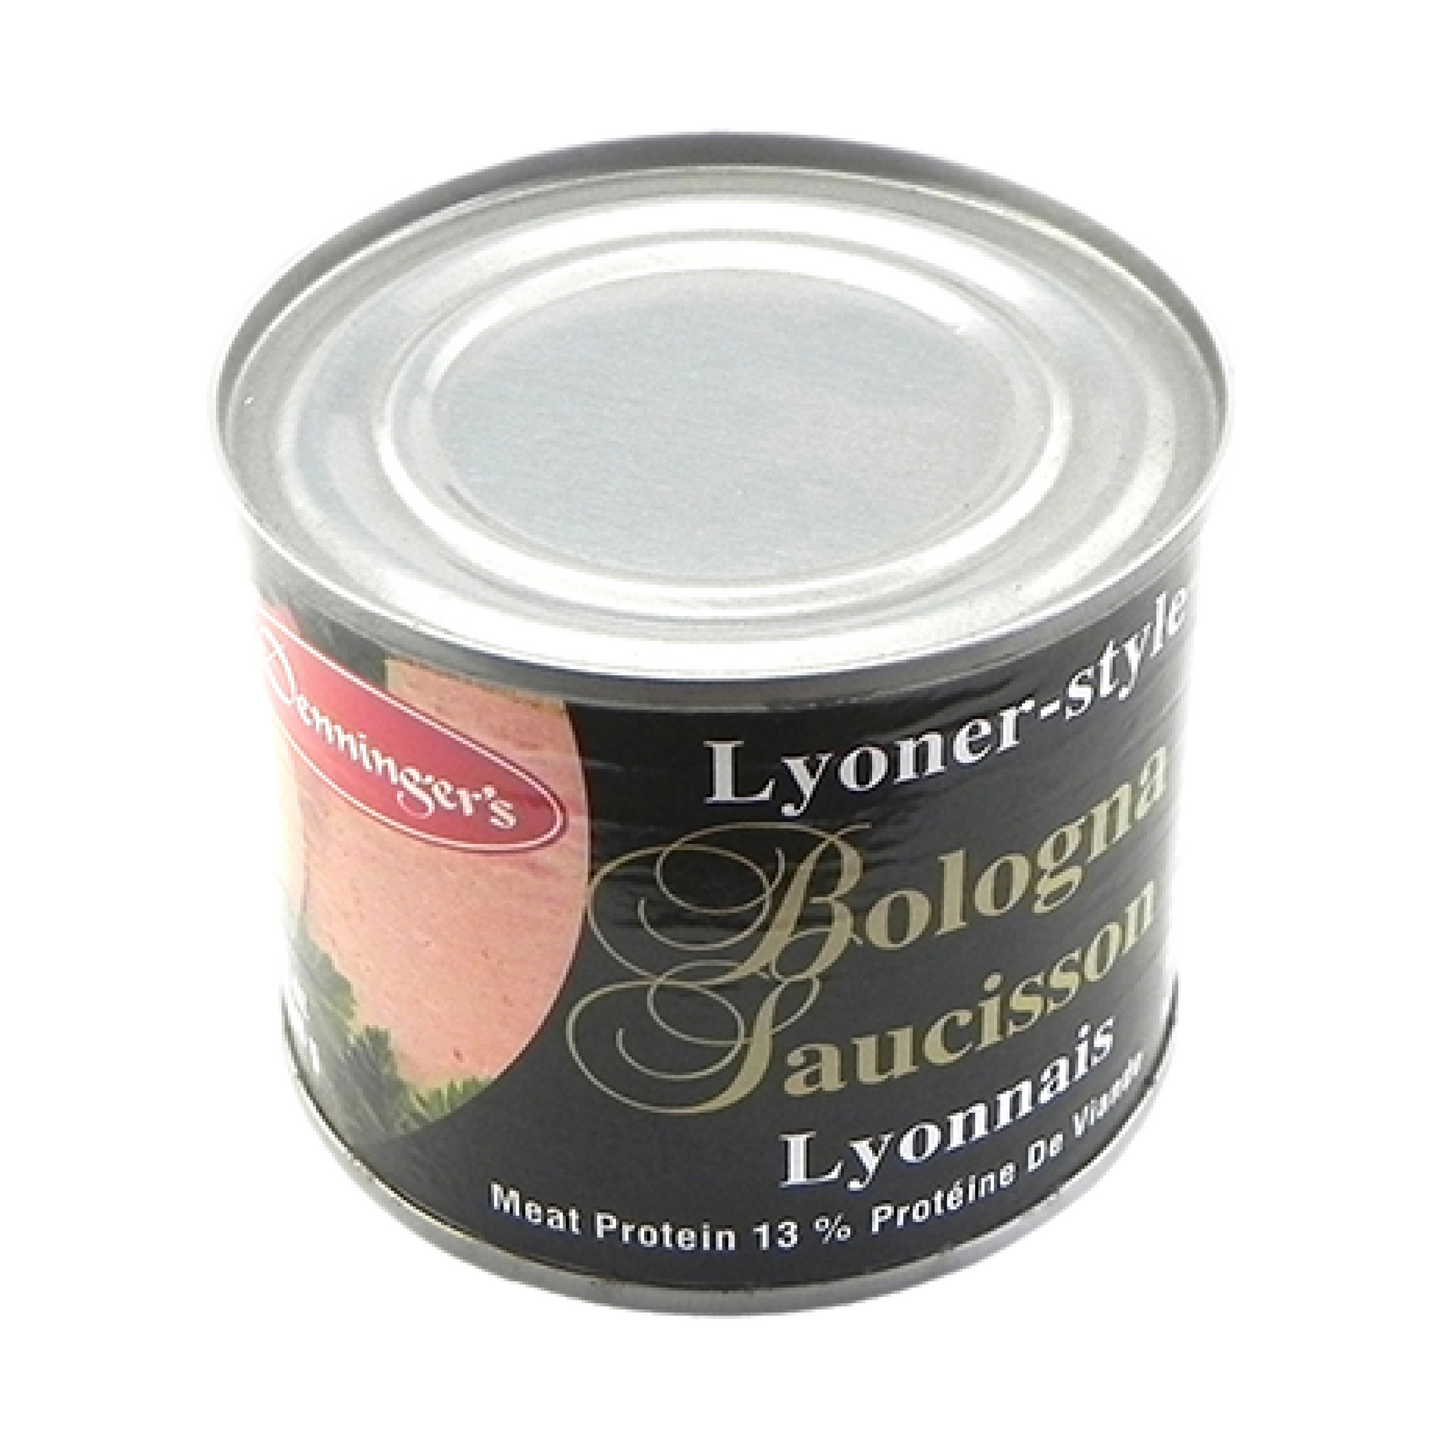 Denninger's Lyoner-Style Bologna 165g